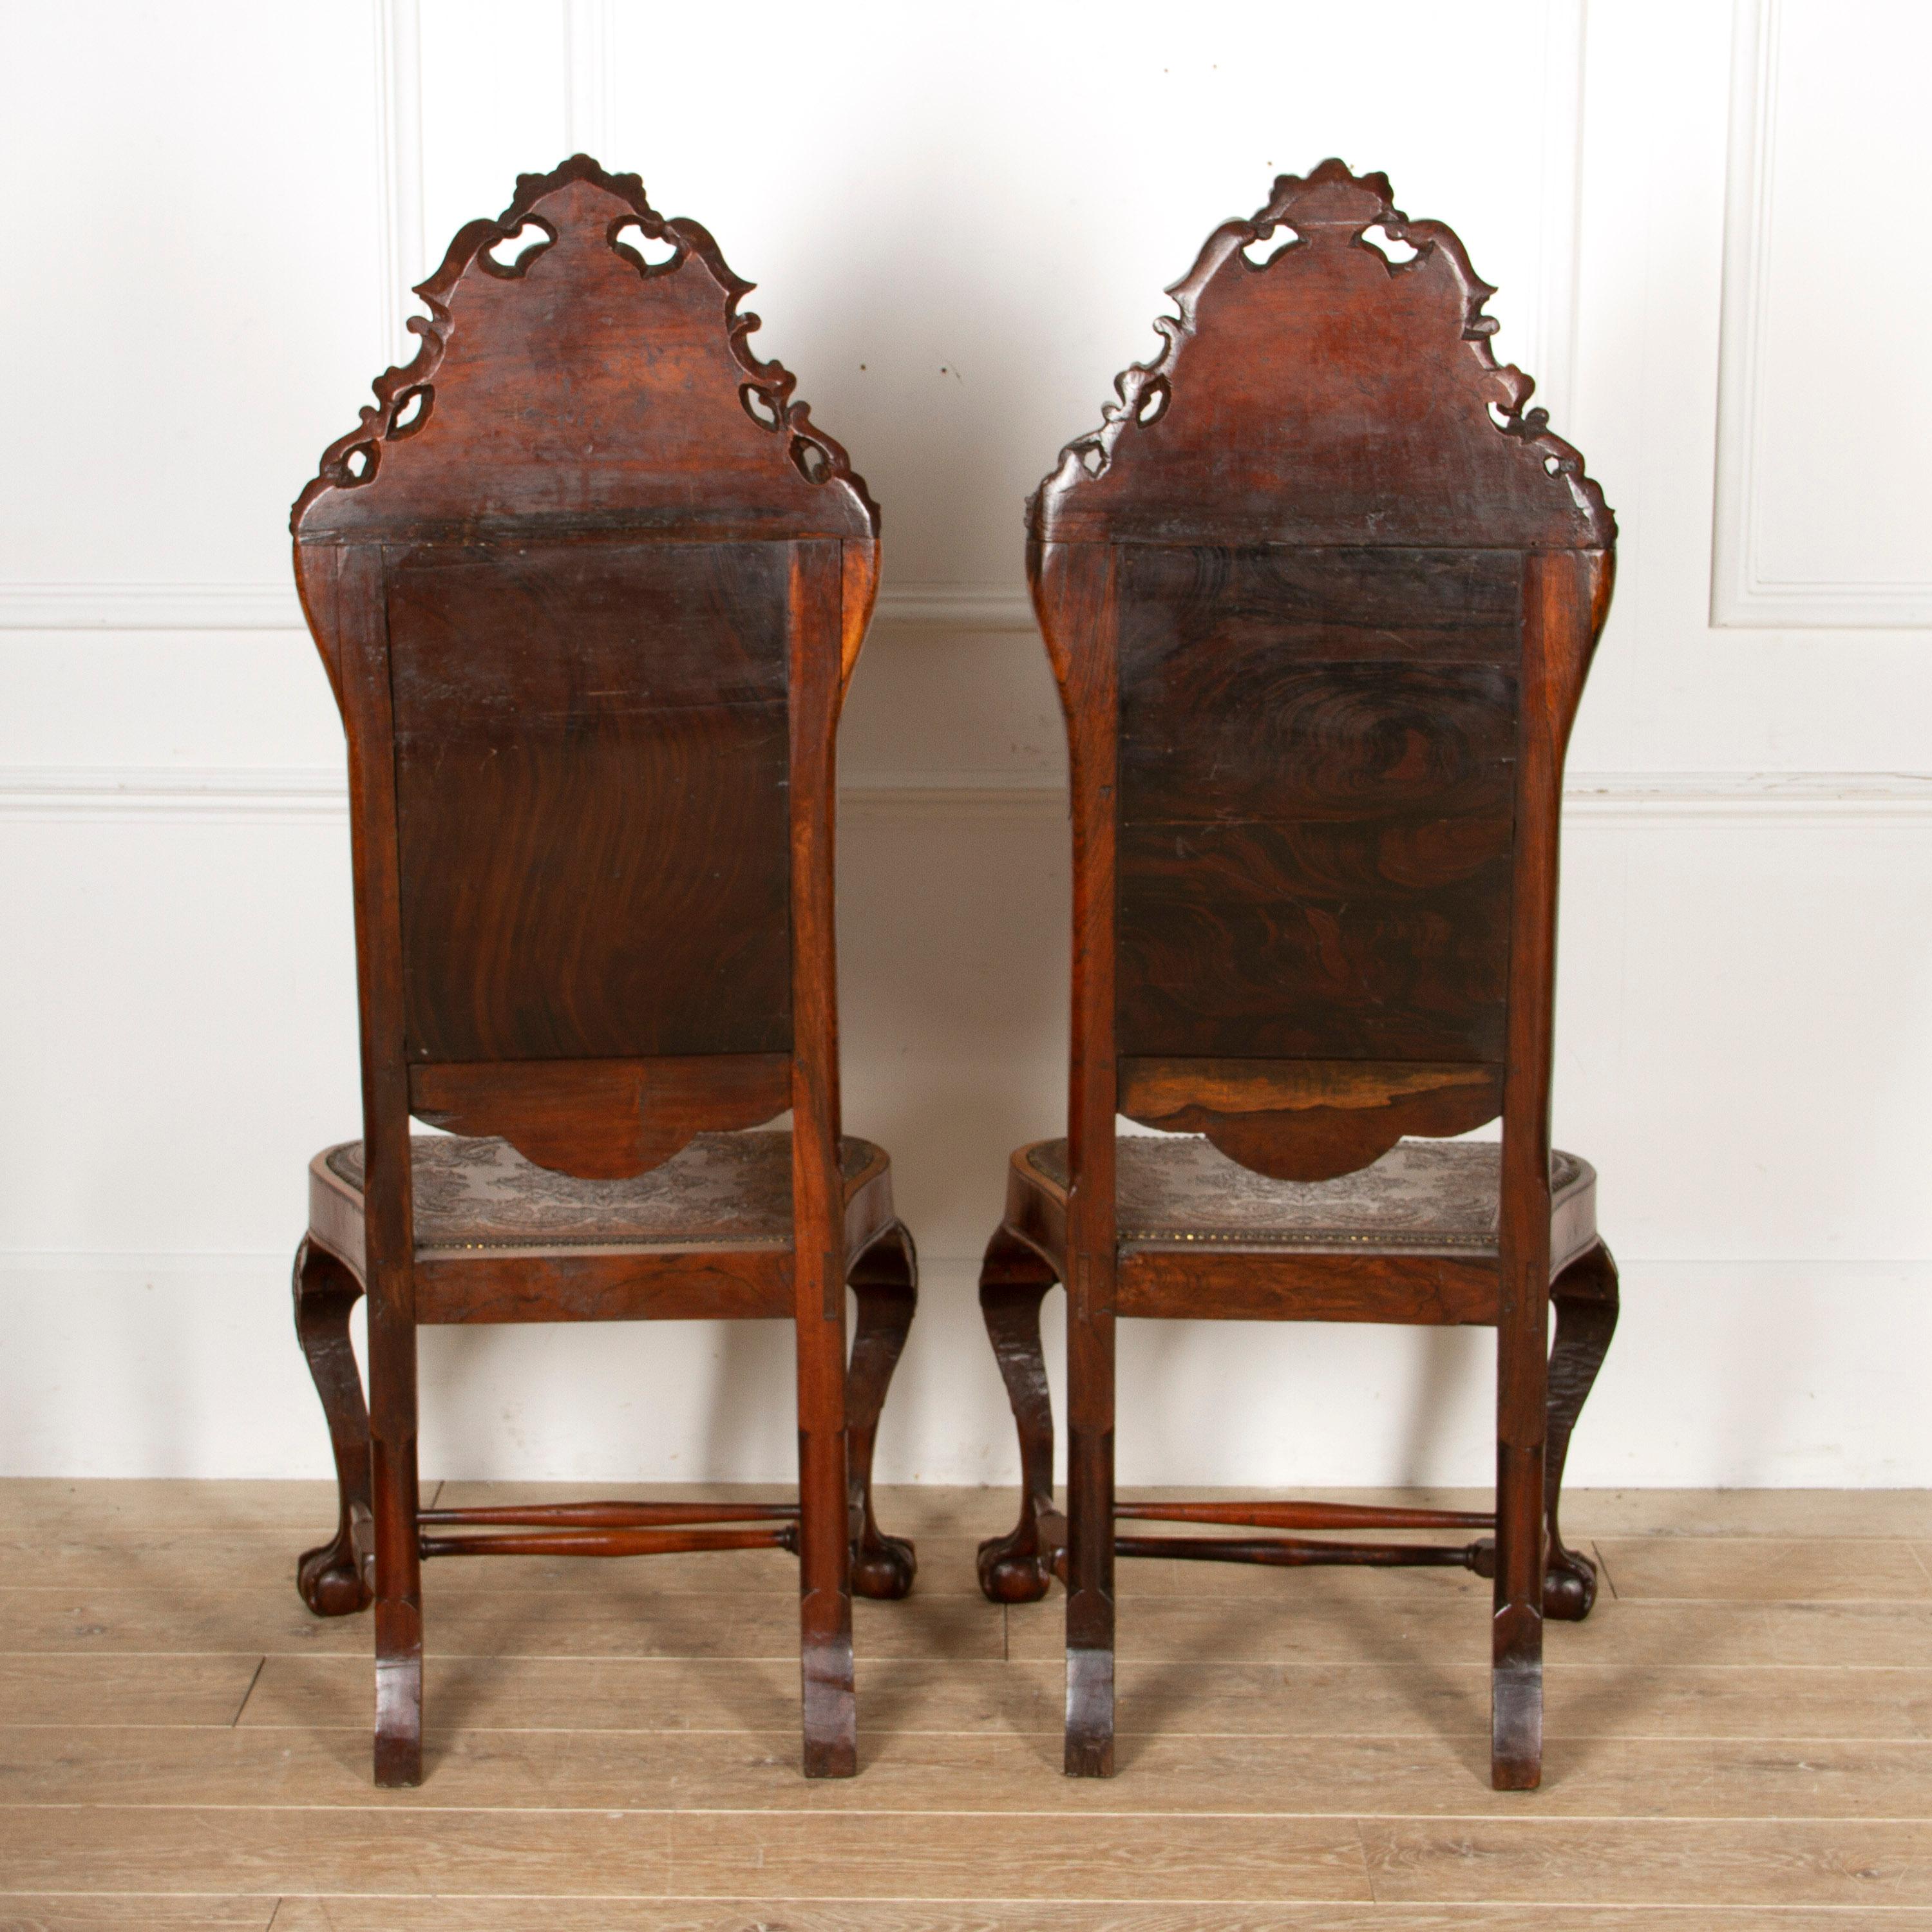 Feines Paar spanischer Beistellstühle aus dem 18. Jahrhundert. 

Diese Stühle sind aus massivem Palisanderholz gefertigt. 

Sie sind mit hochwertigem Leder verziert, das mit einer Blattprägung versehen ist. 

Diese Stühle sind mit viel